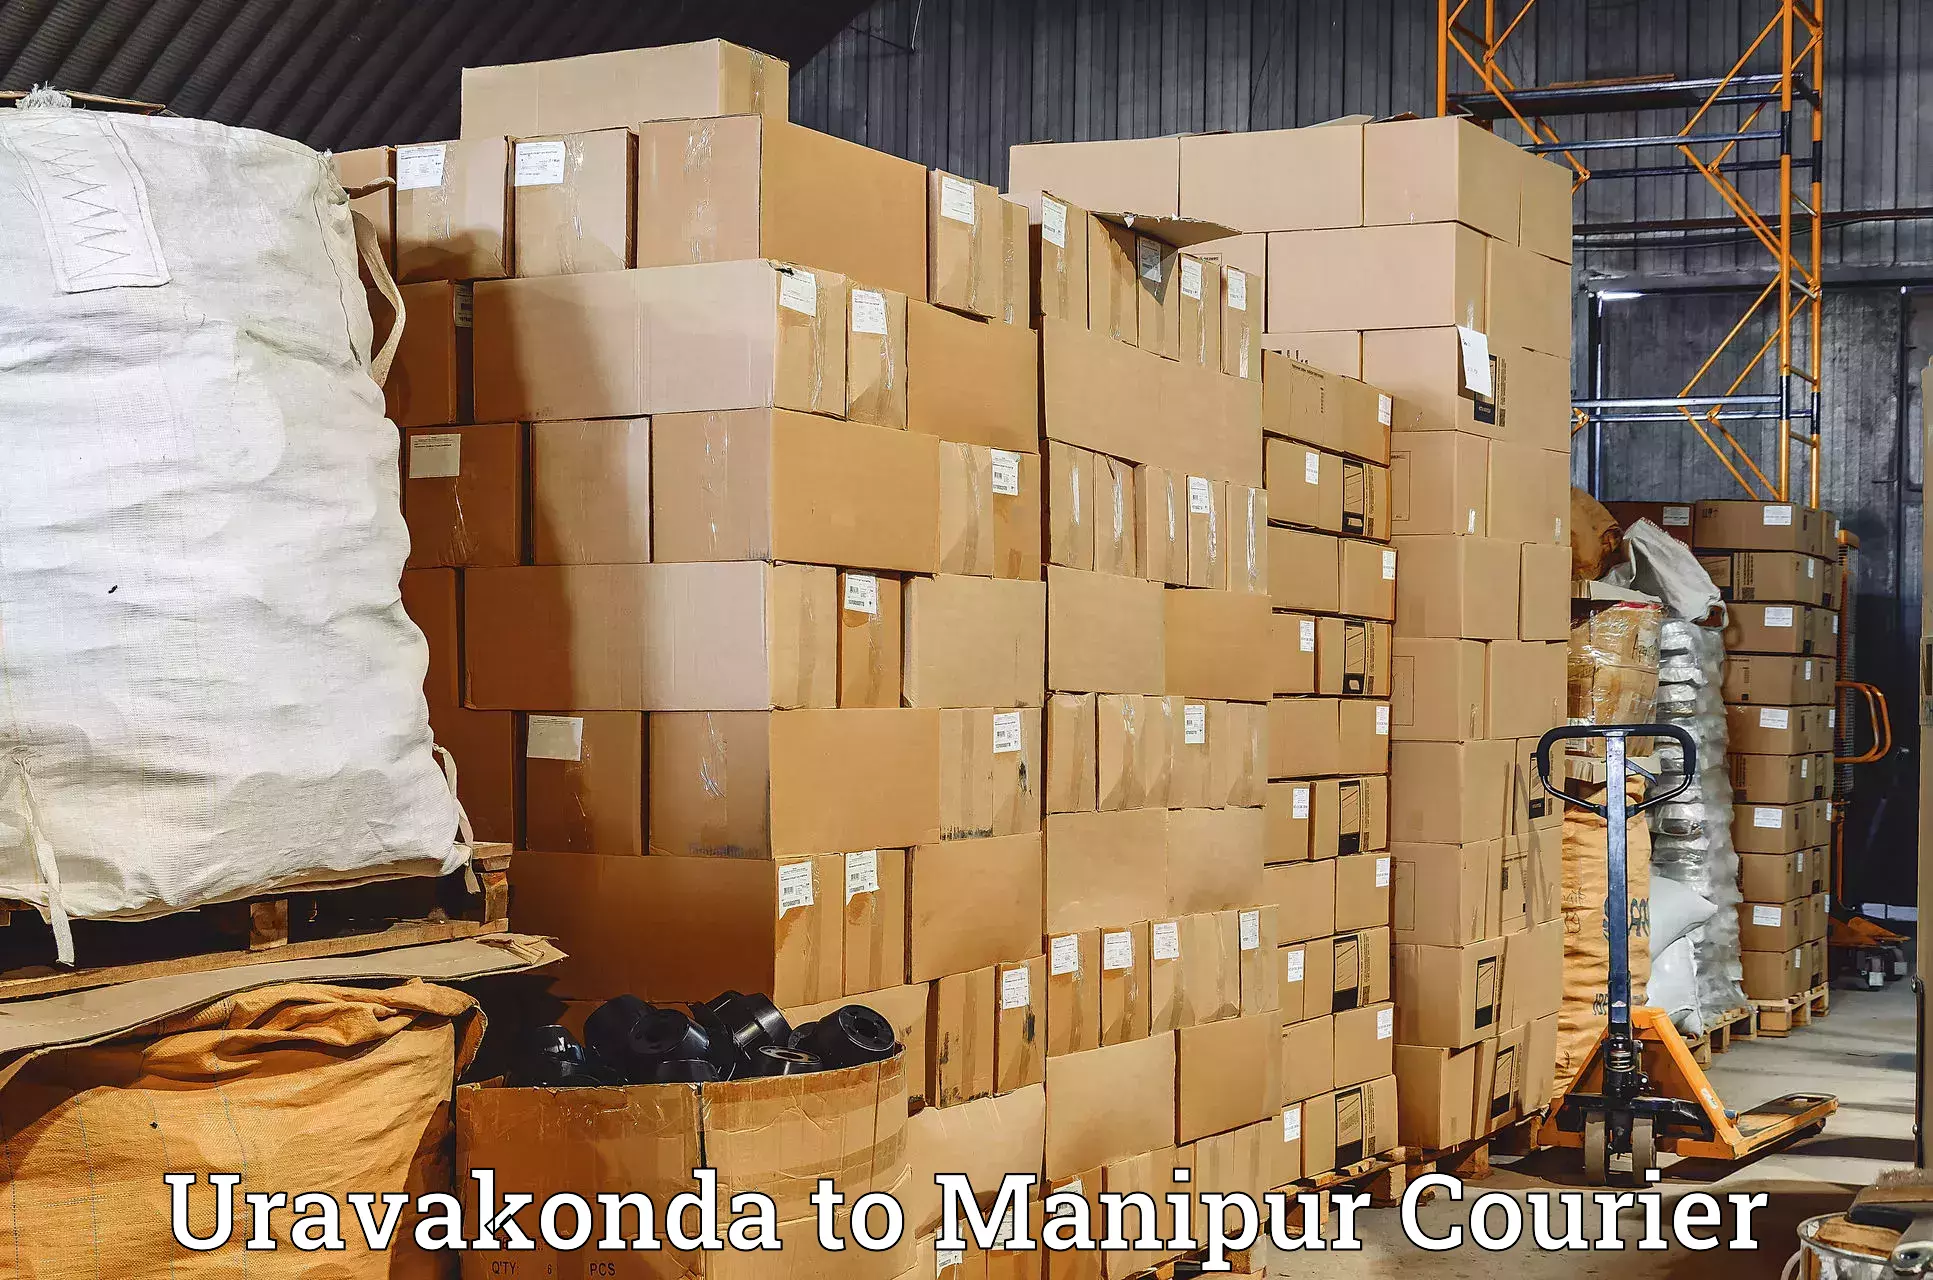 Courier service comparison Uravakonda to Churachandpur